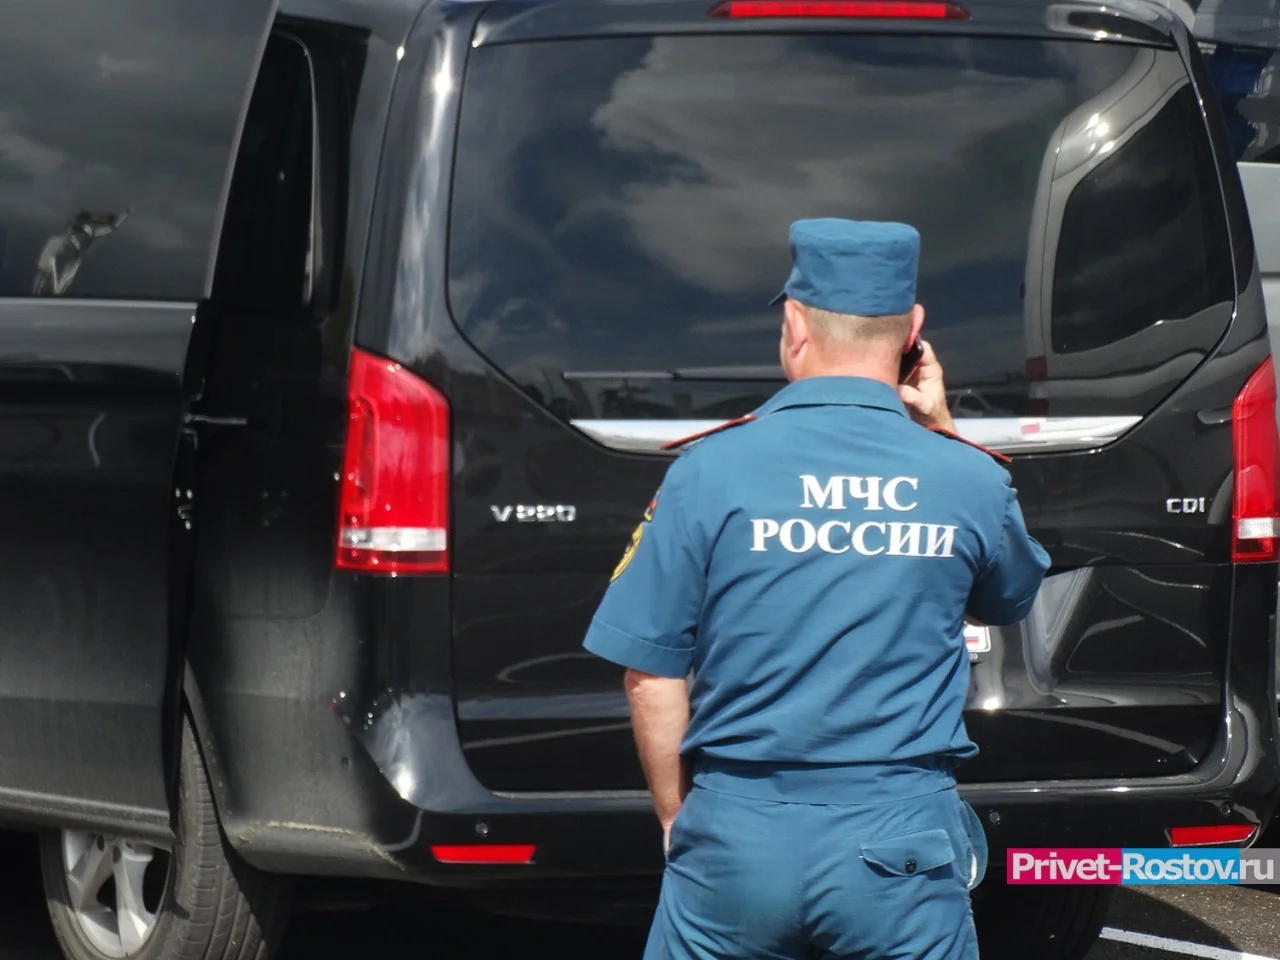 В Новошахтинске генерал МЧС совершил угон пожарной машины, чтобы проверить охрану